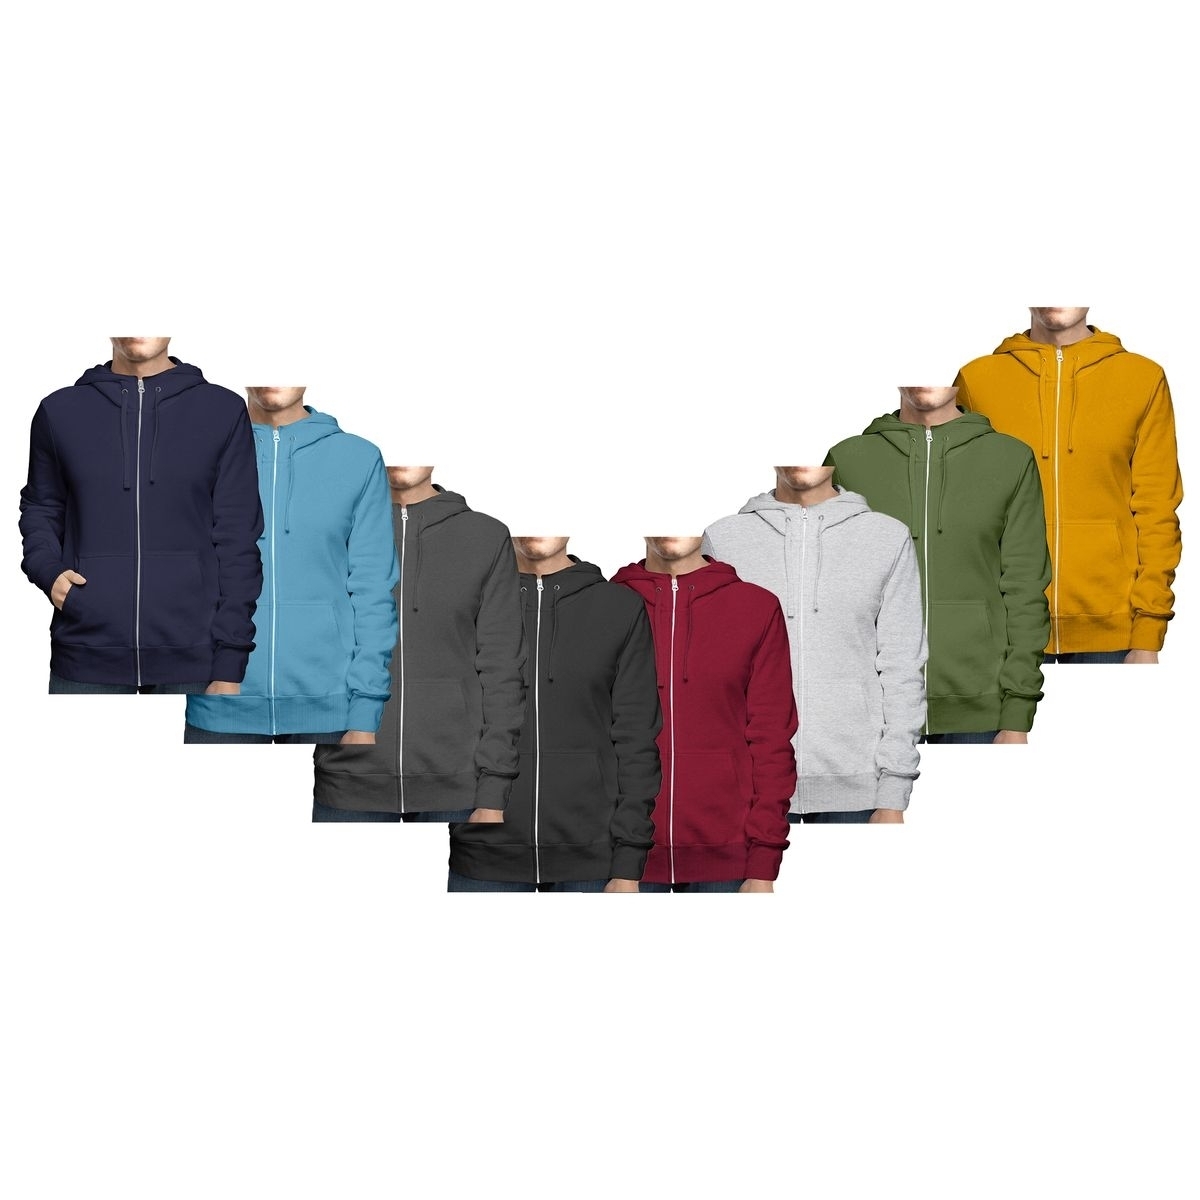 Men's Winter Warm Cozy Full Zip-Up Fleece Lined Soft Hoodie Sweatshirt - Grey, Xx-large